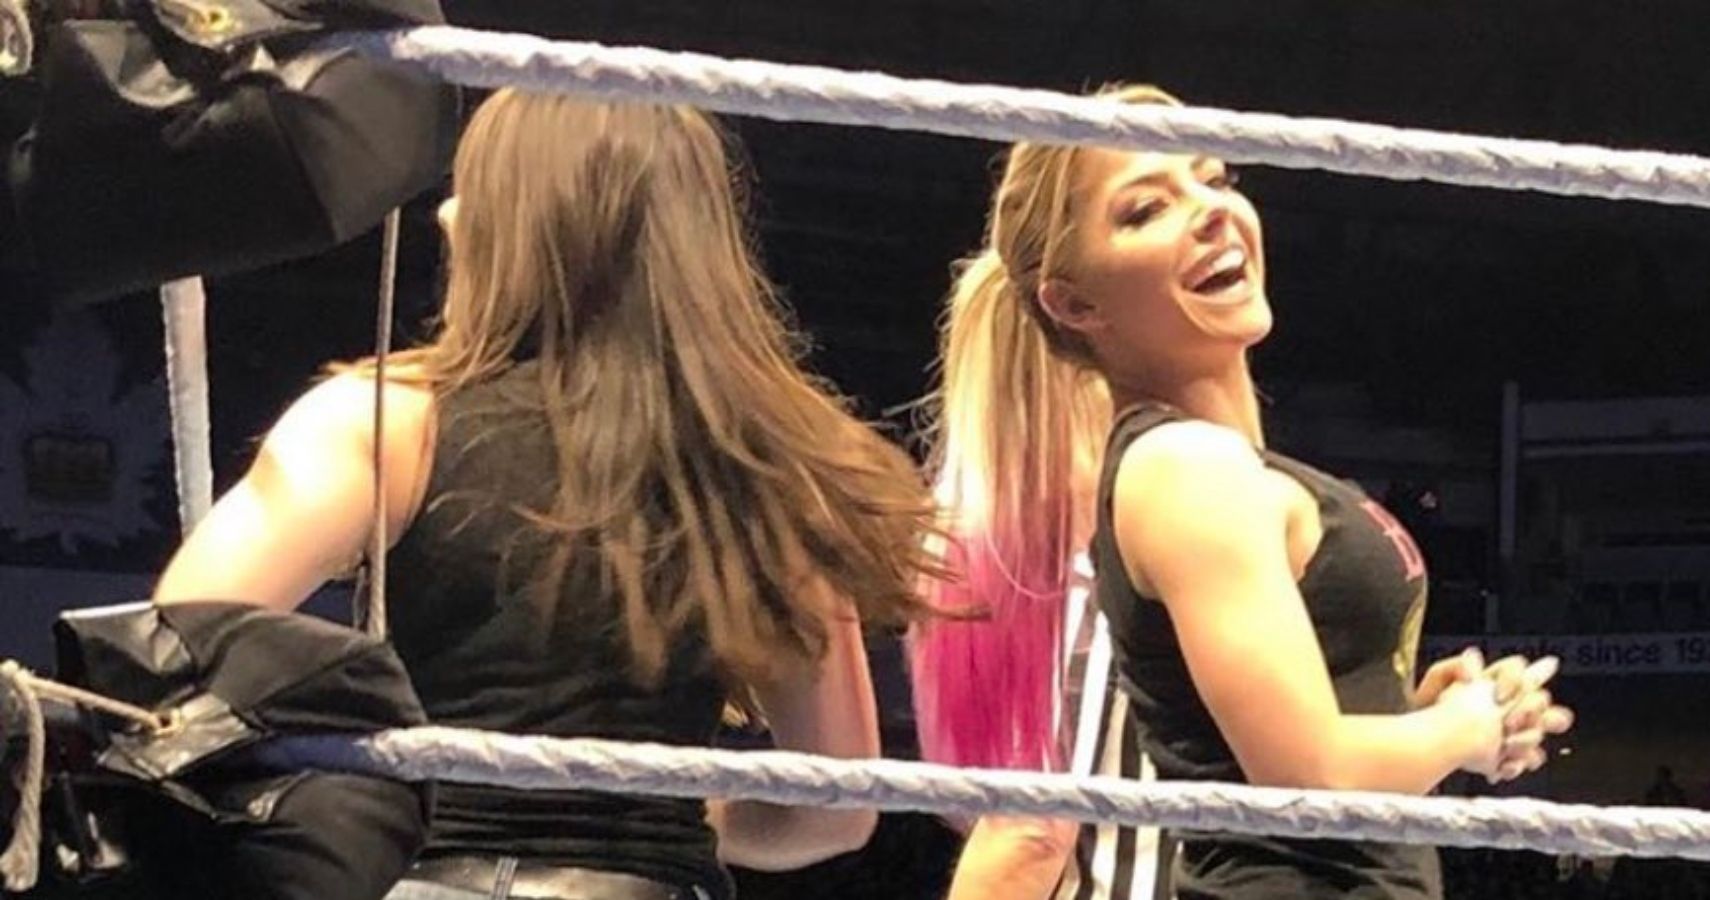 Bliss butt alexa WWE's Alexa